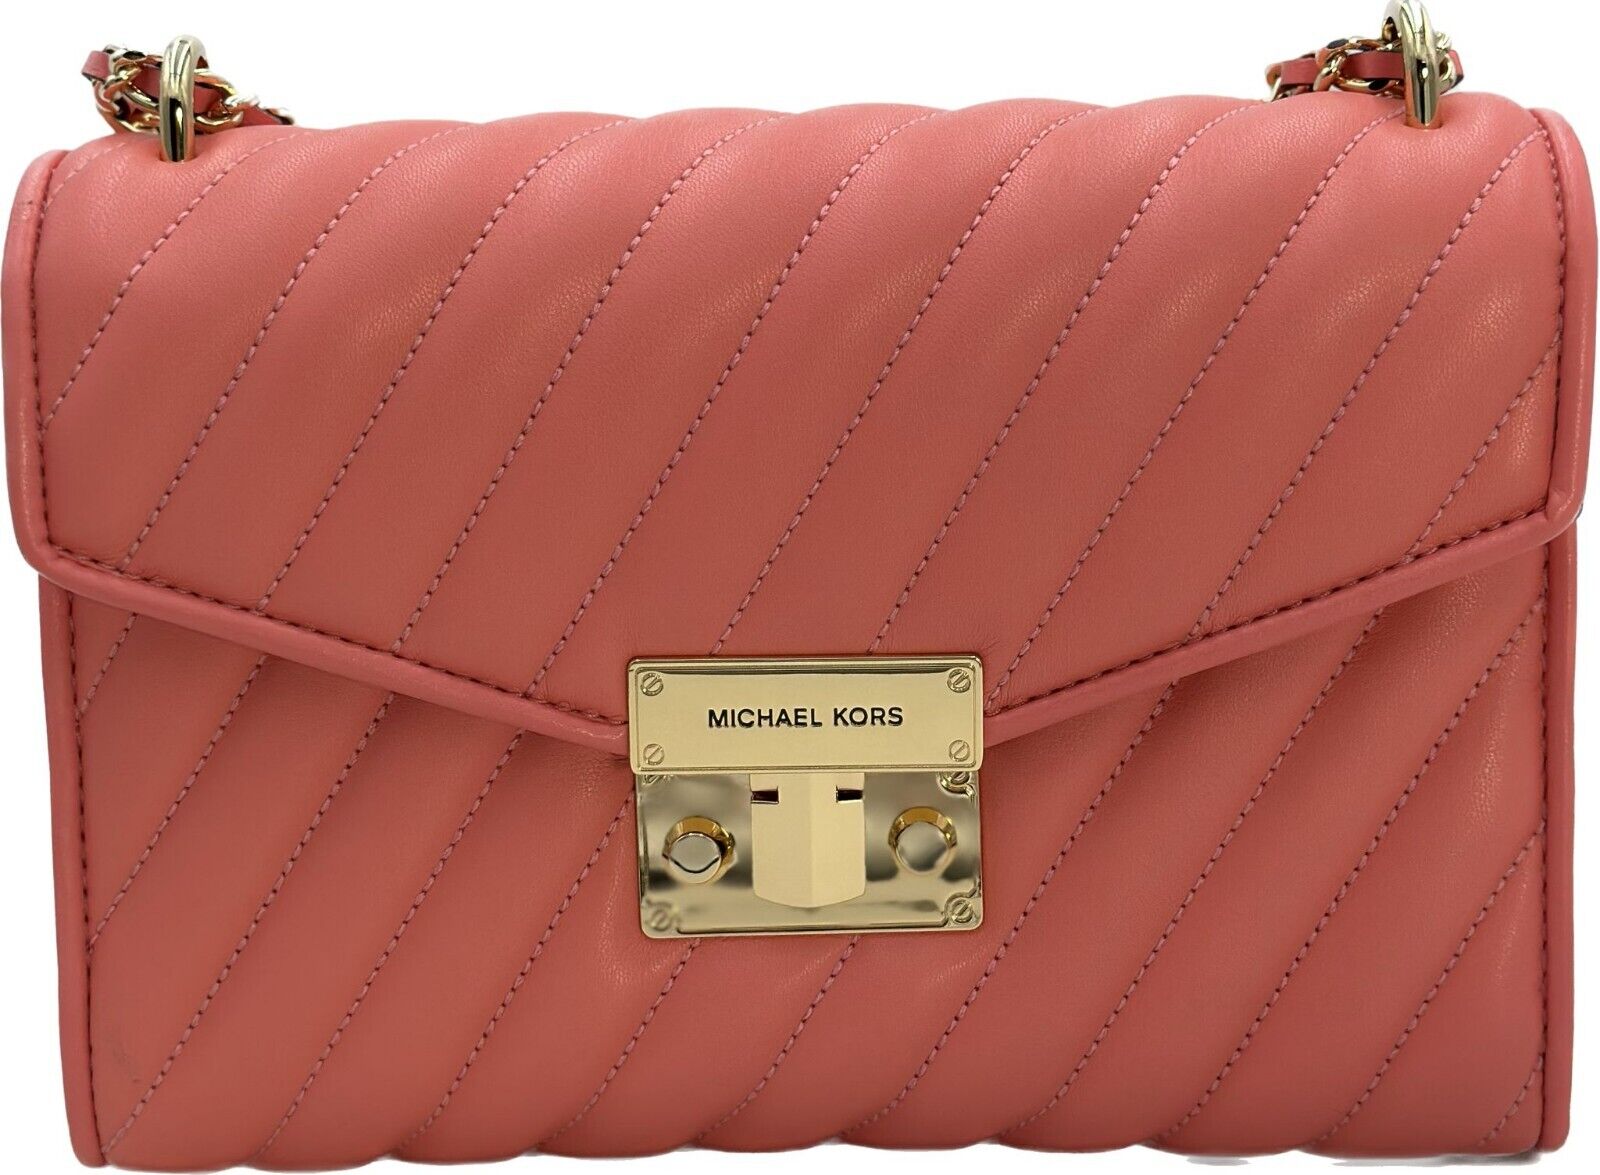 Michael Kors Women's Rose Vegan Leather Bag in Grapefruit - 193599735610